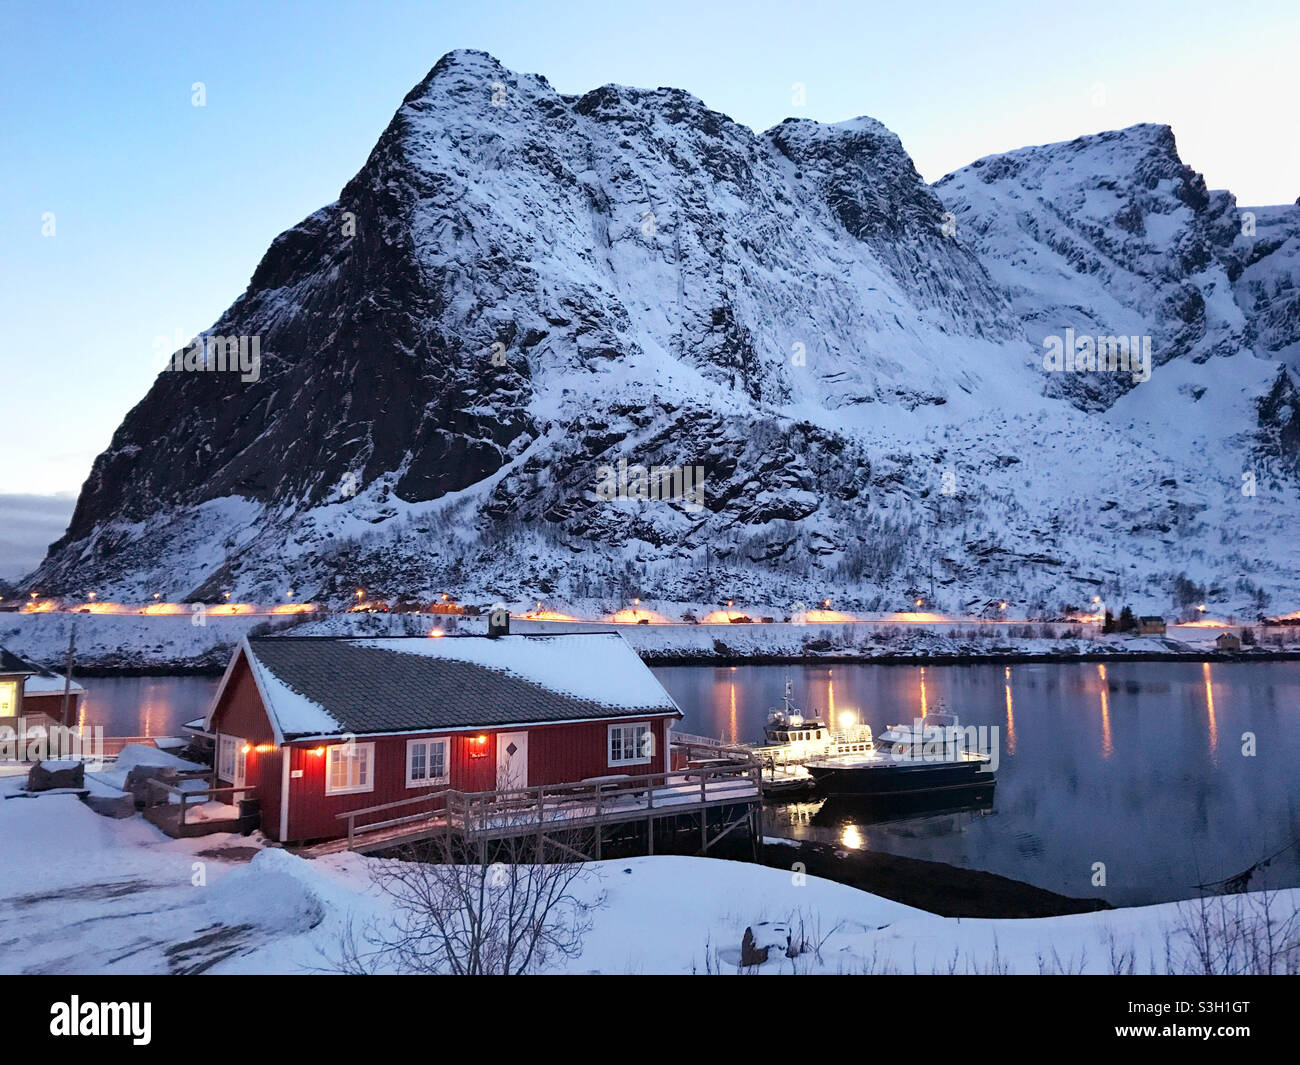 Bel villaggio di pescatori di Reine in inverno, Isole Lofoten, Norvegia. Tramonto colorato sullo splendido villaggio di pescatori di Reine, circondato da fiordo innevato. Foto Stock